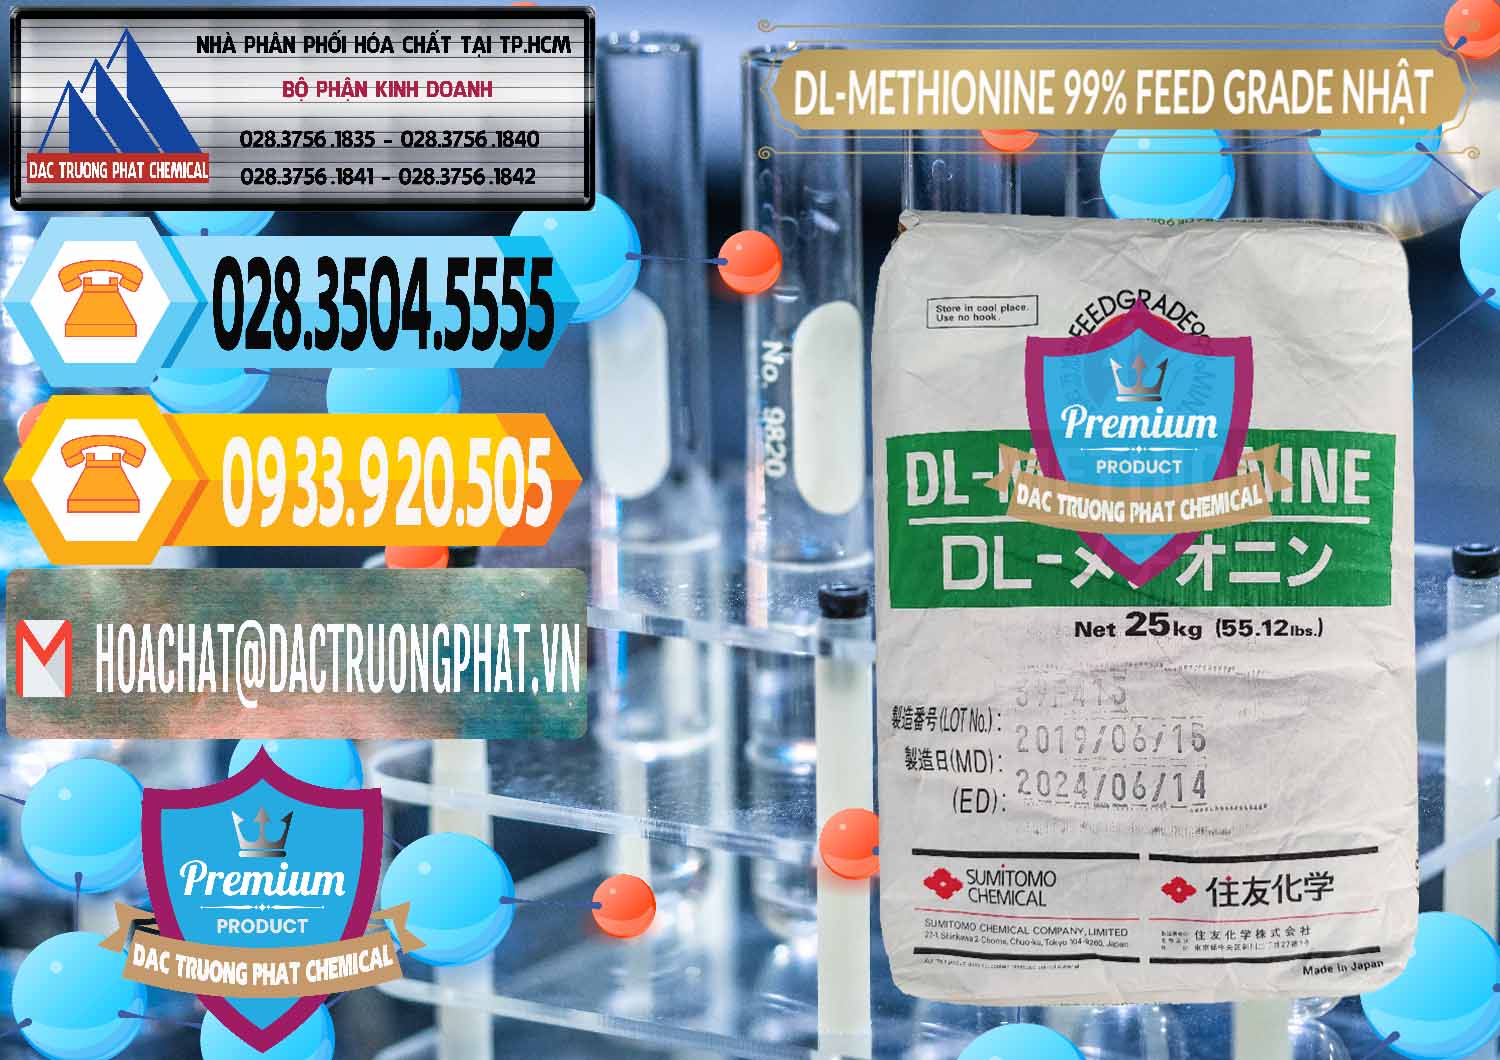 Đơn vị cung cấp và bán DL-Methionine - C5H11NO2S Feed Grade Sumitomo Nhật Bản Japan - 0313 - Cty cung cấp - phân phối hóa chất tại TP.HCM - hoachattayrua.net